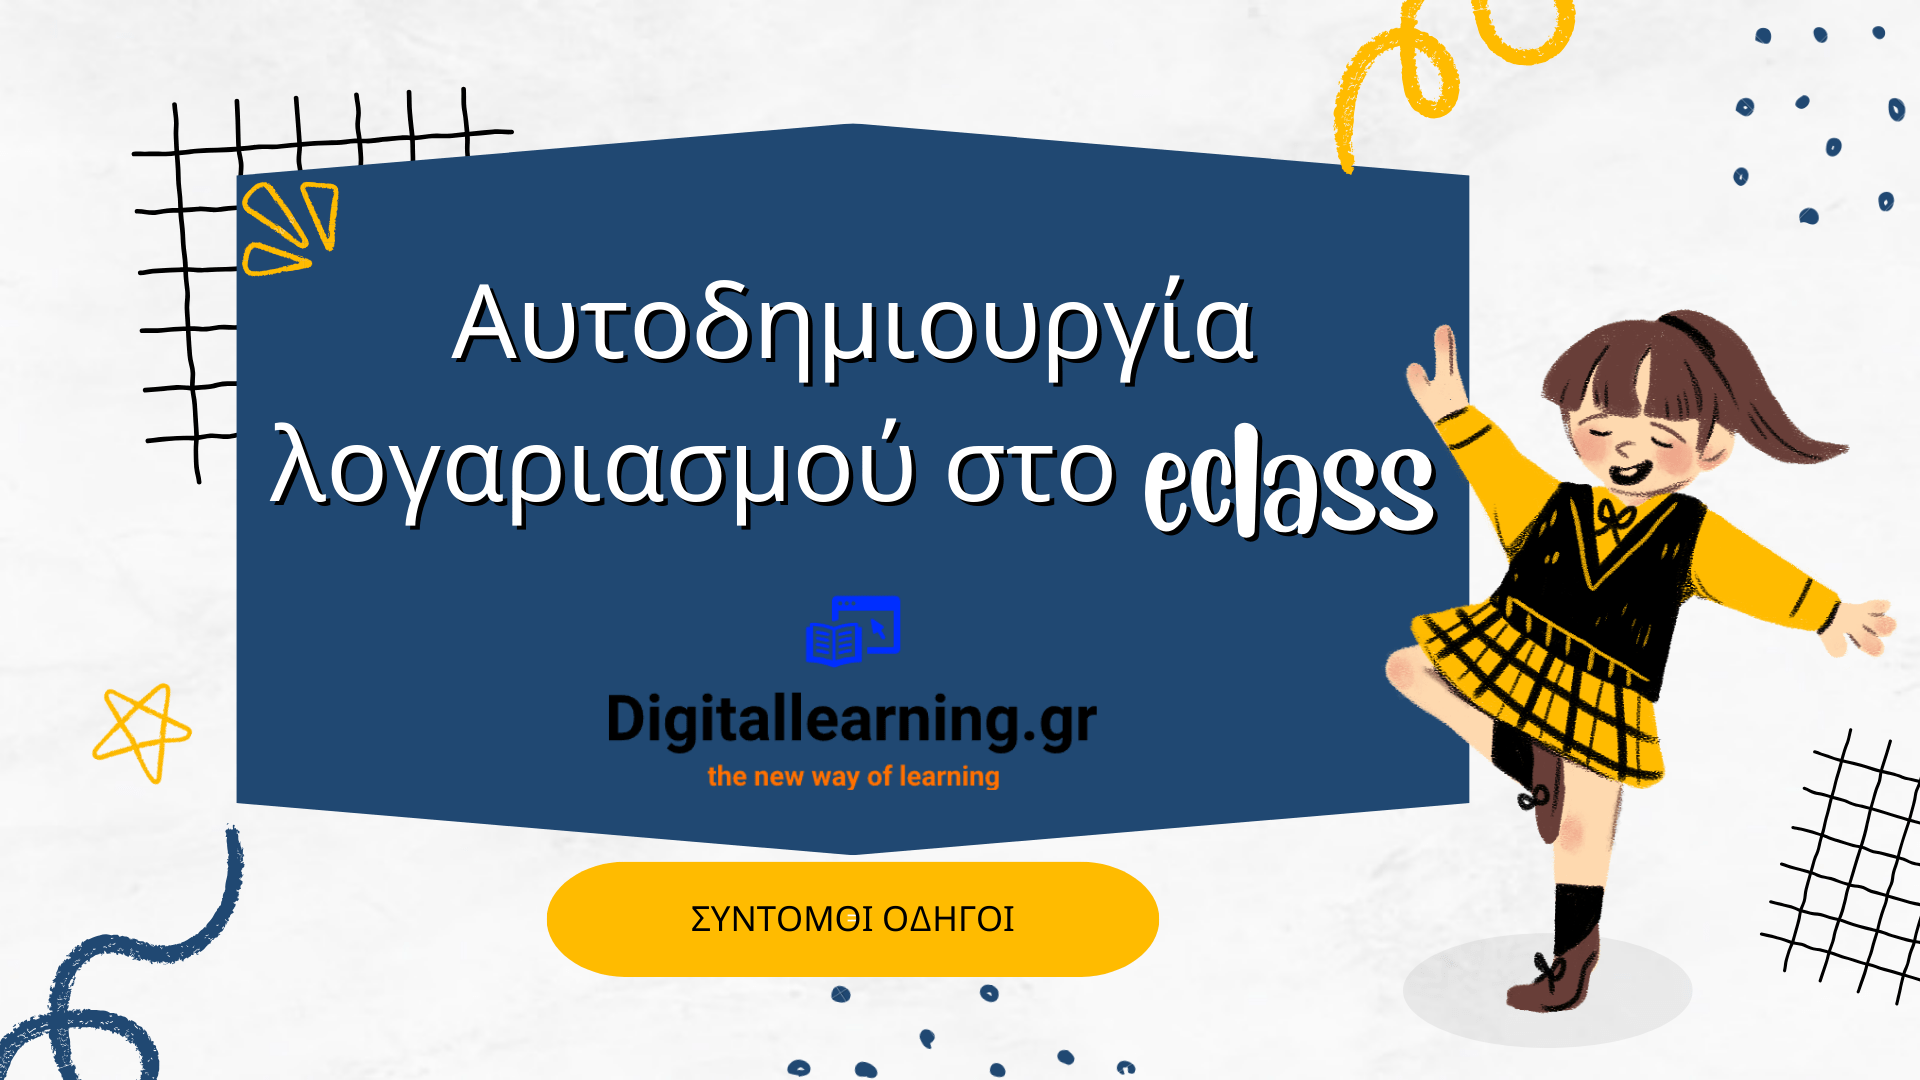 Δημιουργία Λογαριασμού στην ηλεκτρονική Τάξη (χωρίς την δημιουργία λογαριασμού στο digitallearning.gr)